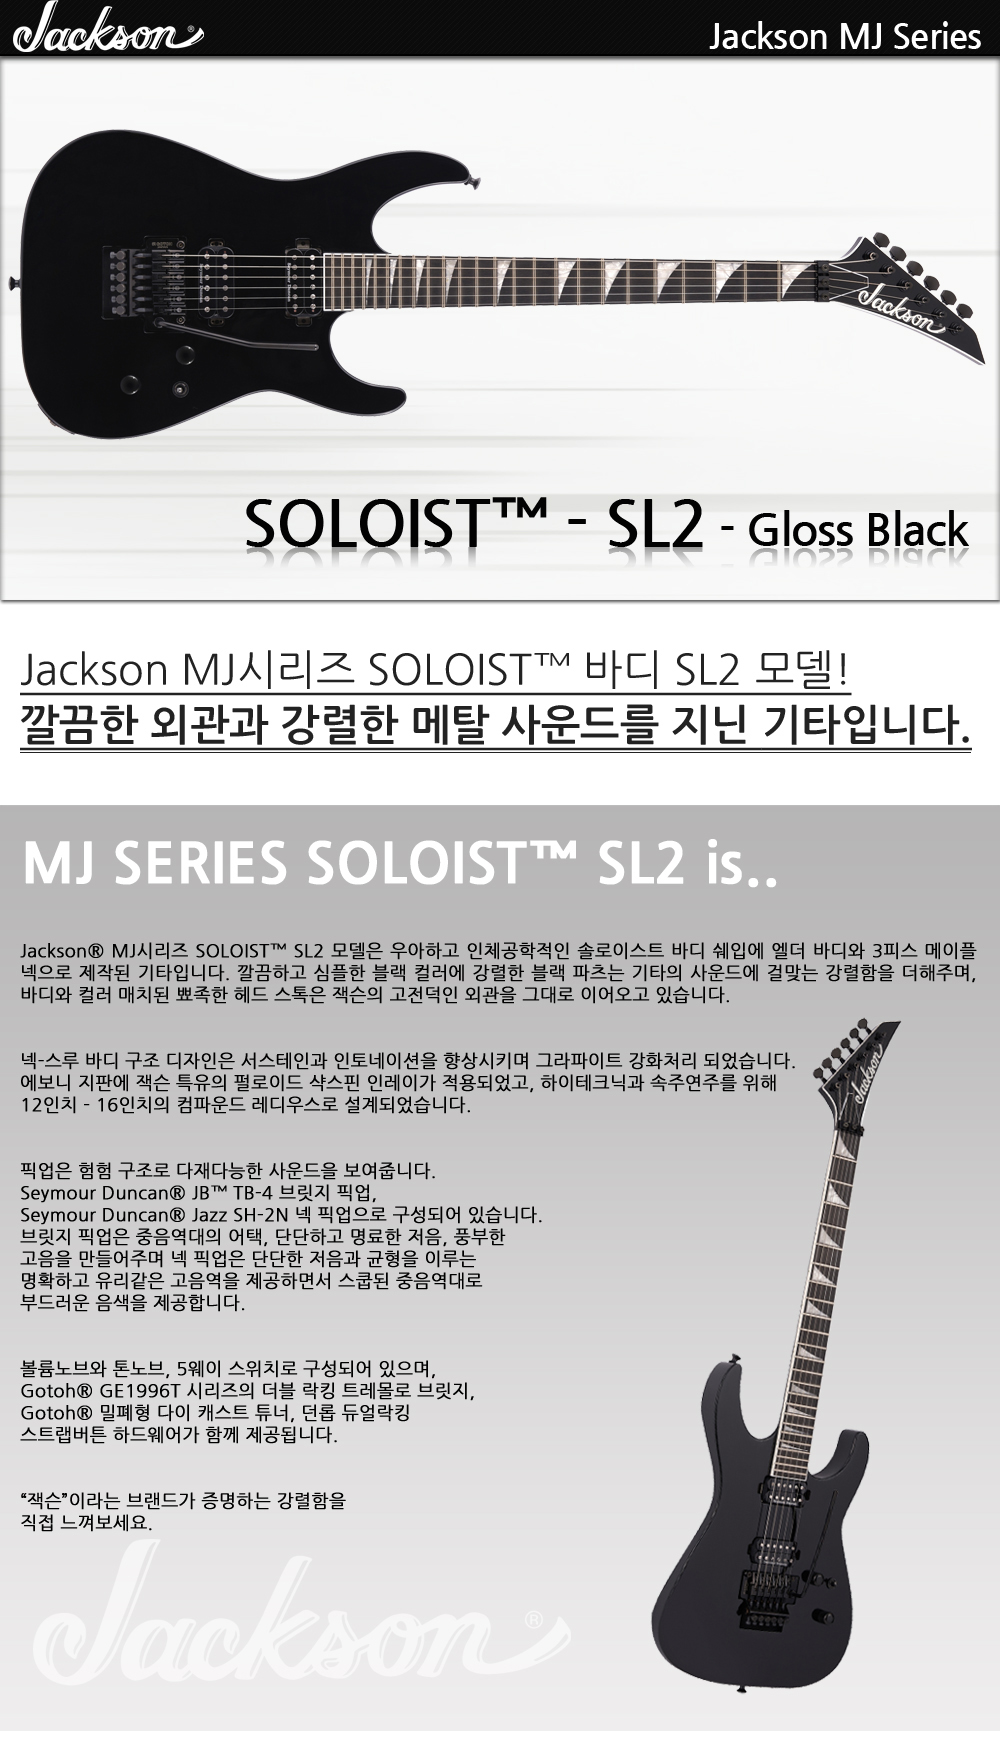 Jackson-MJ-Soloist-SL2-GlossBlack_1_173650.jpg